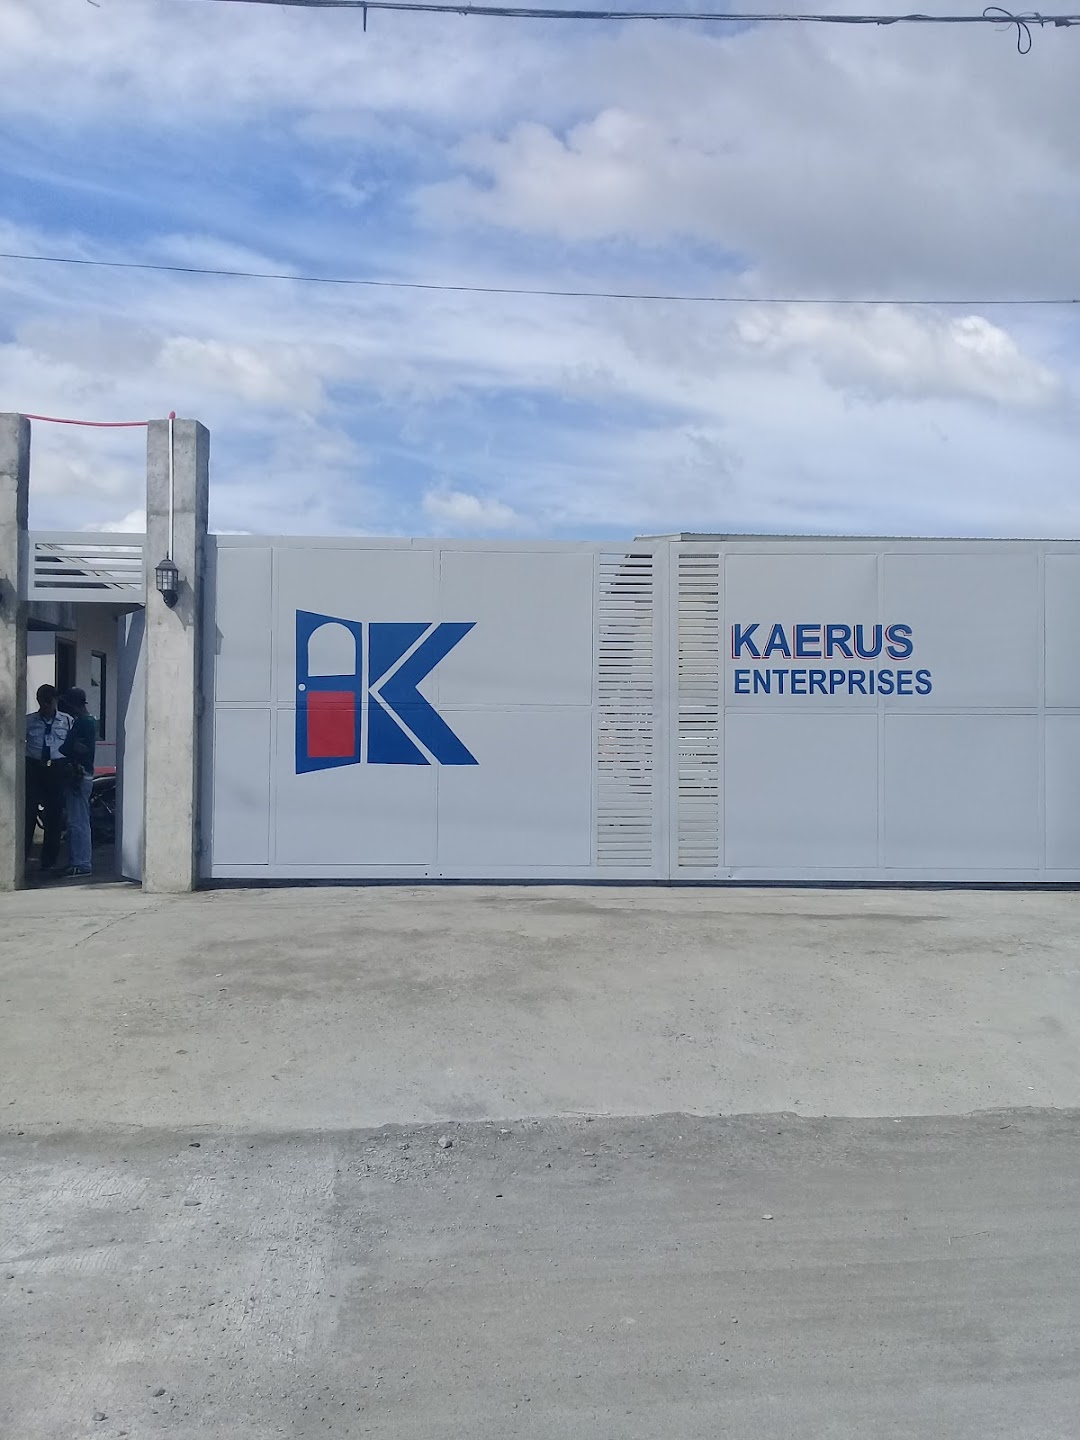 Kaerus Enterprises